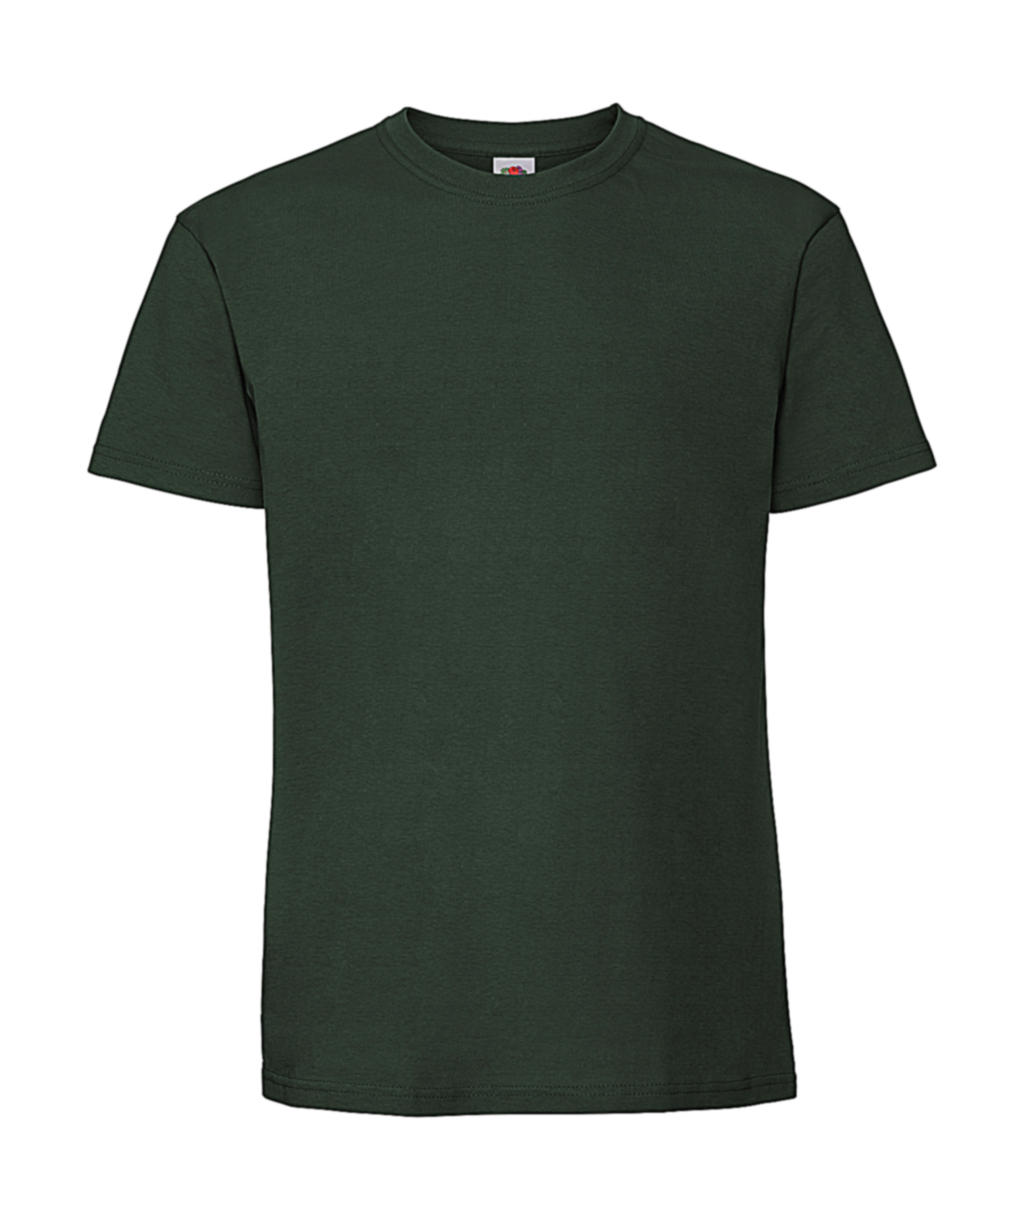 Tričko z prstencovej bavlny Iconic 195 Premium - bottle green